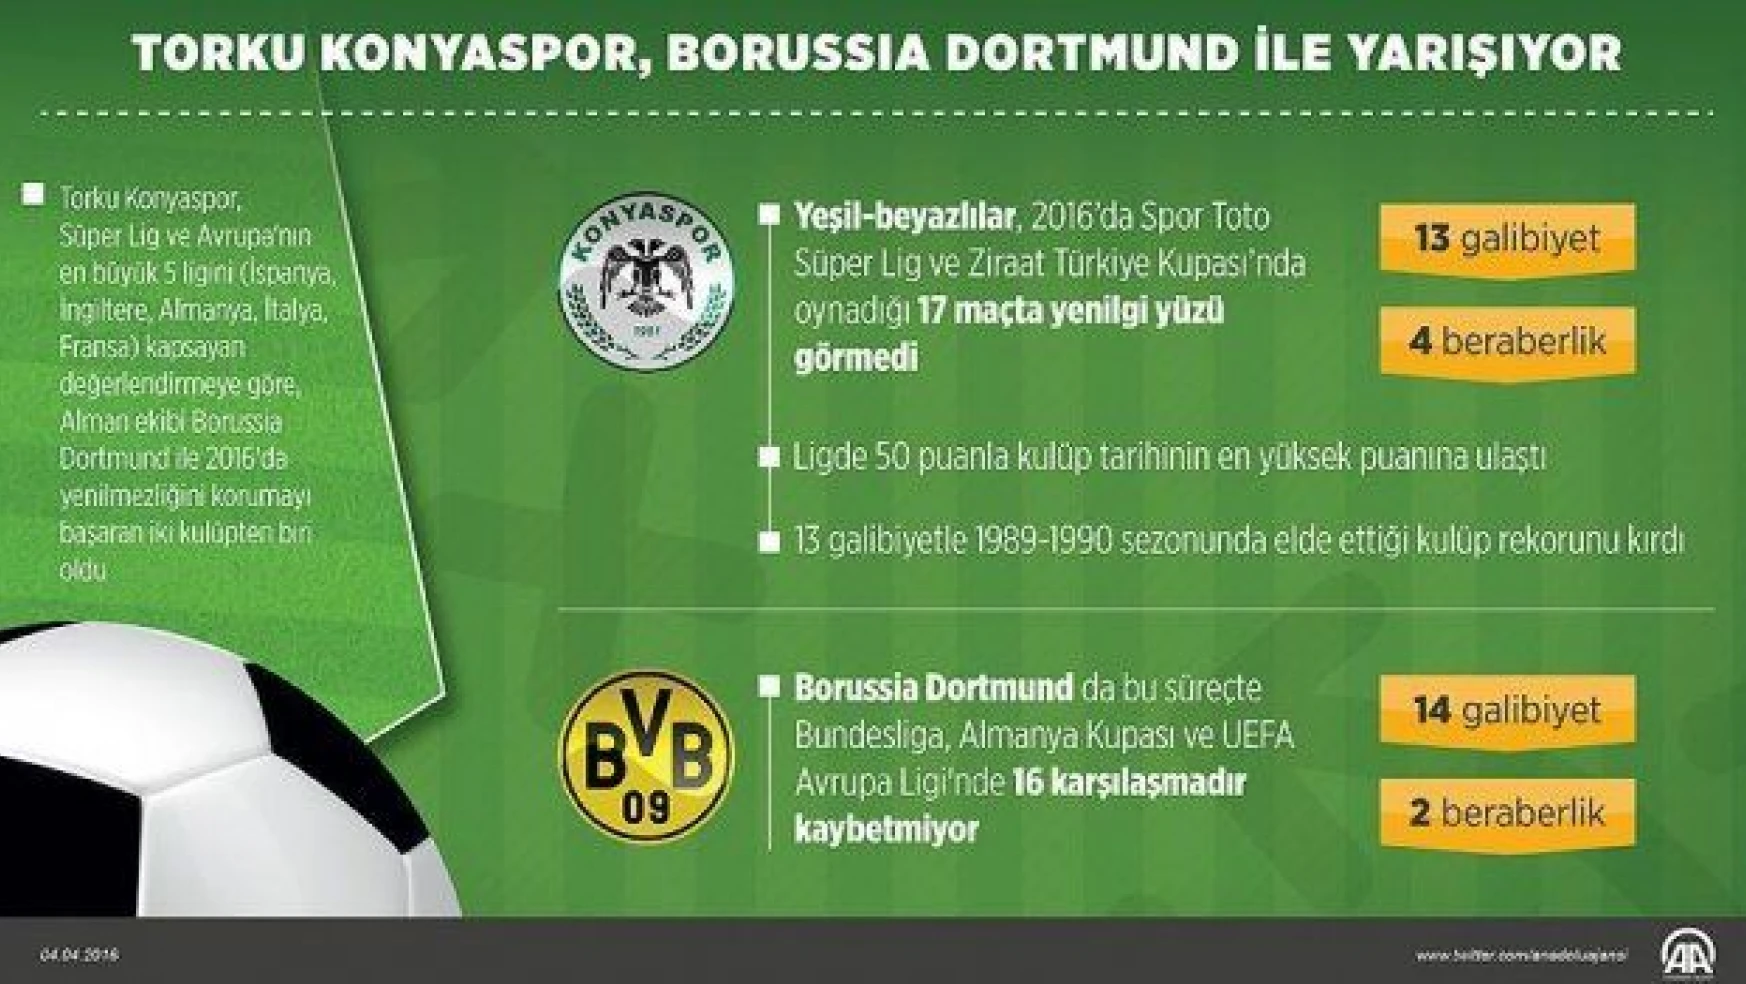 Torku Konyaspor 2016'da yoluna 'namağlup' devam ediyor